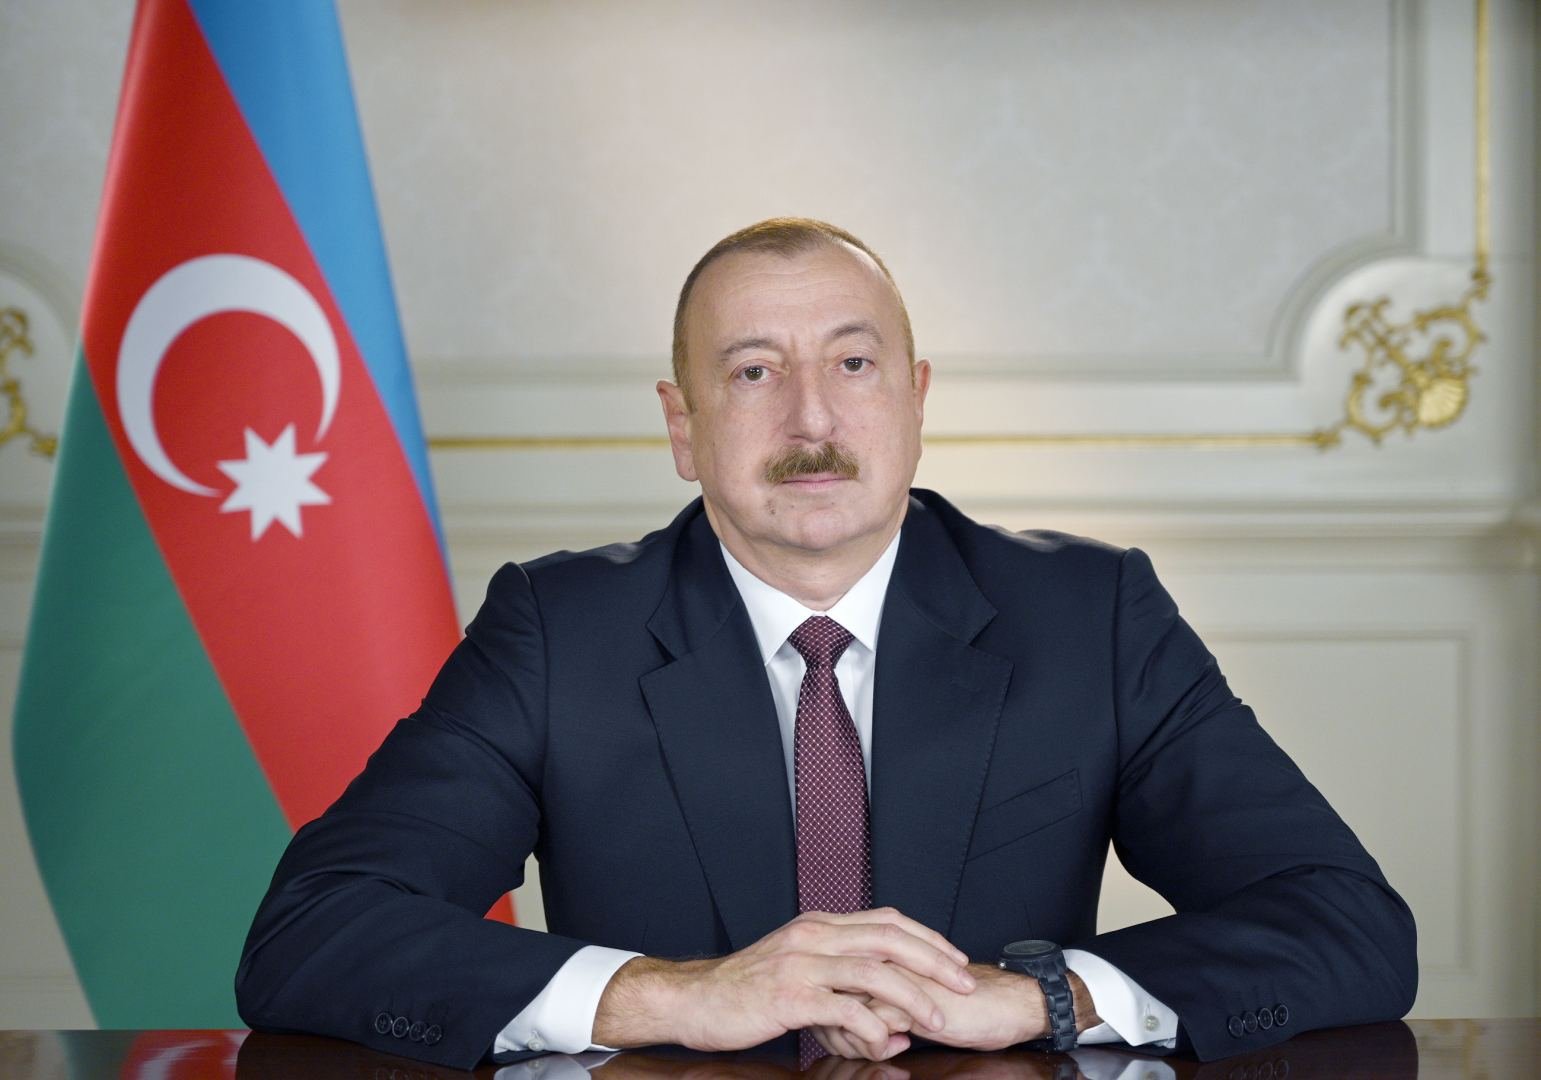 Утвержден меморандум между Азербайджаном и Кыргызстаном - Указ